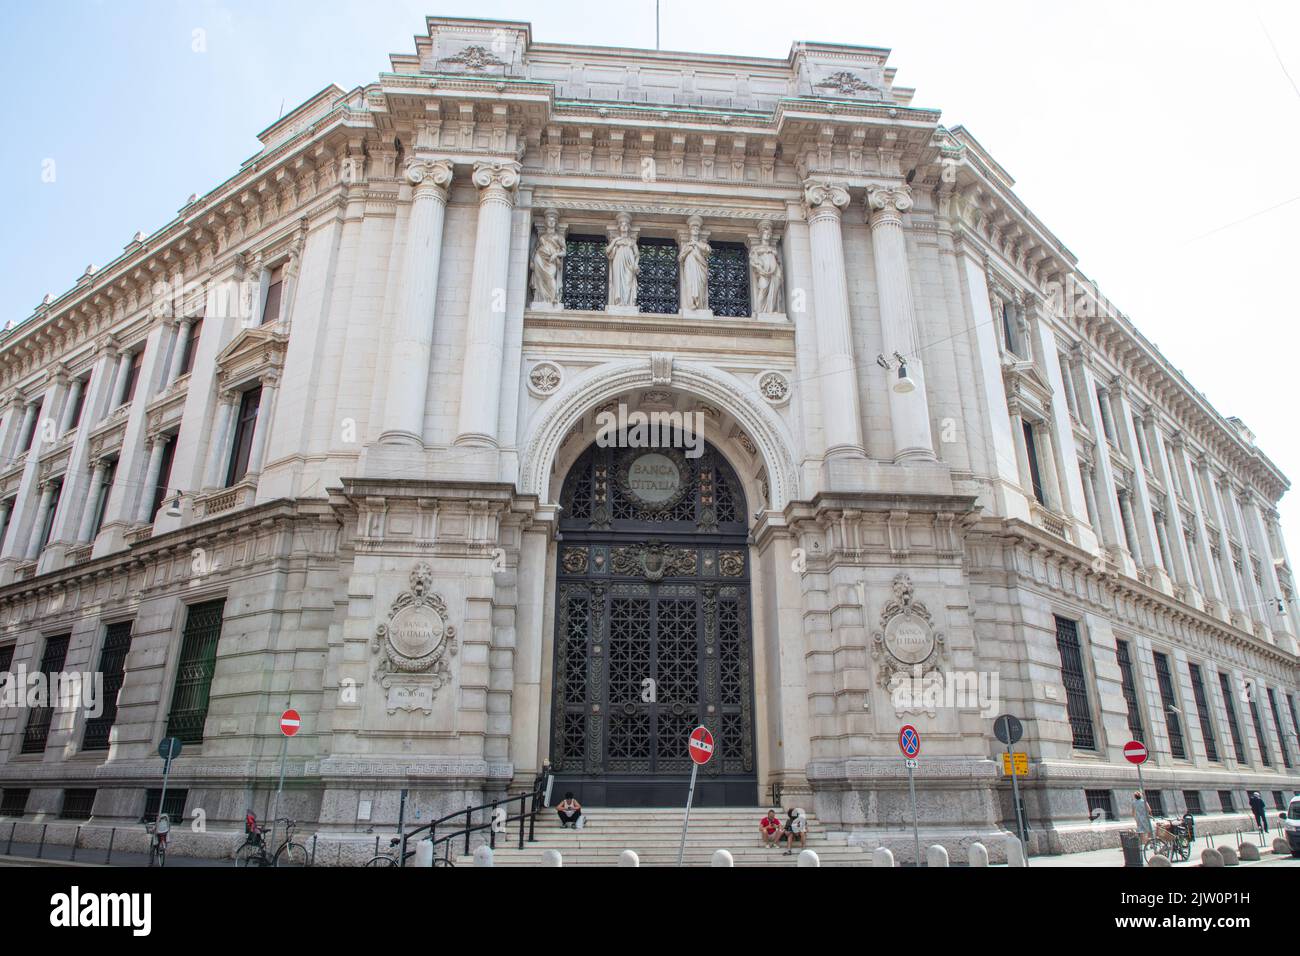 Ingresso principale dell'edificio della Banca d'Italia con un enorme cancello in ferro e bronzo e una facciata splendidamente decorata, Milano, Italia Foto Stock